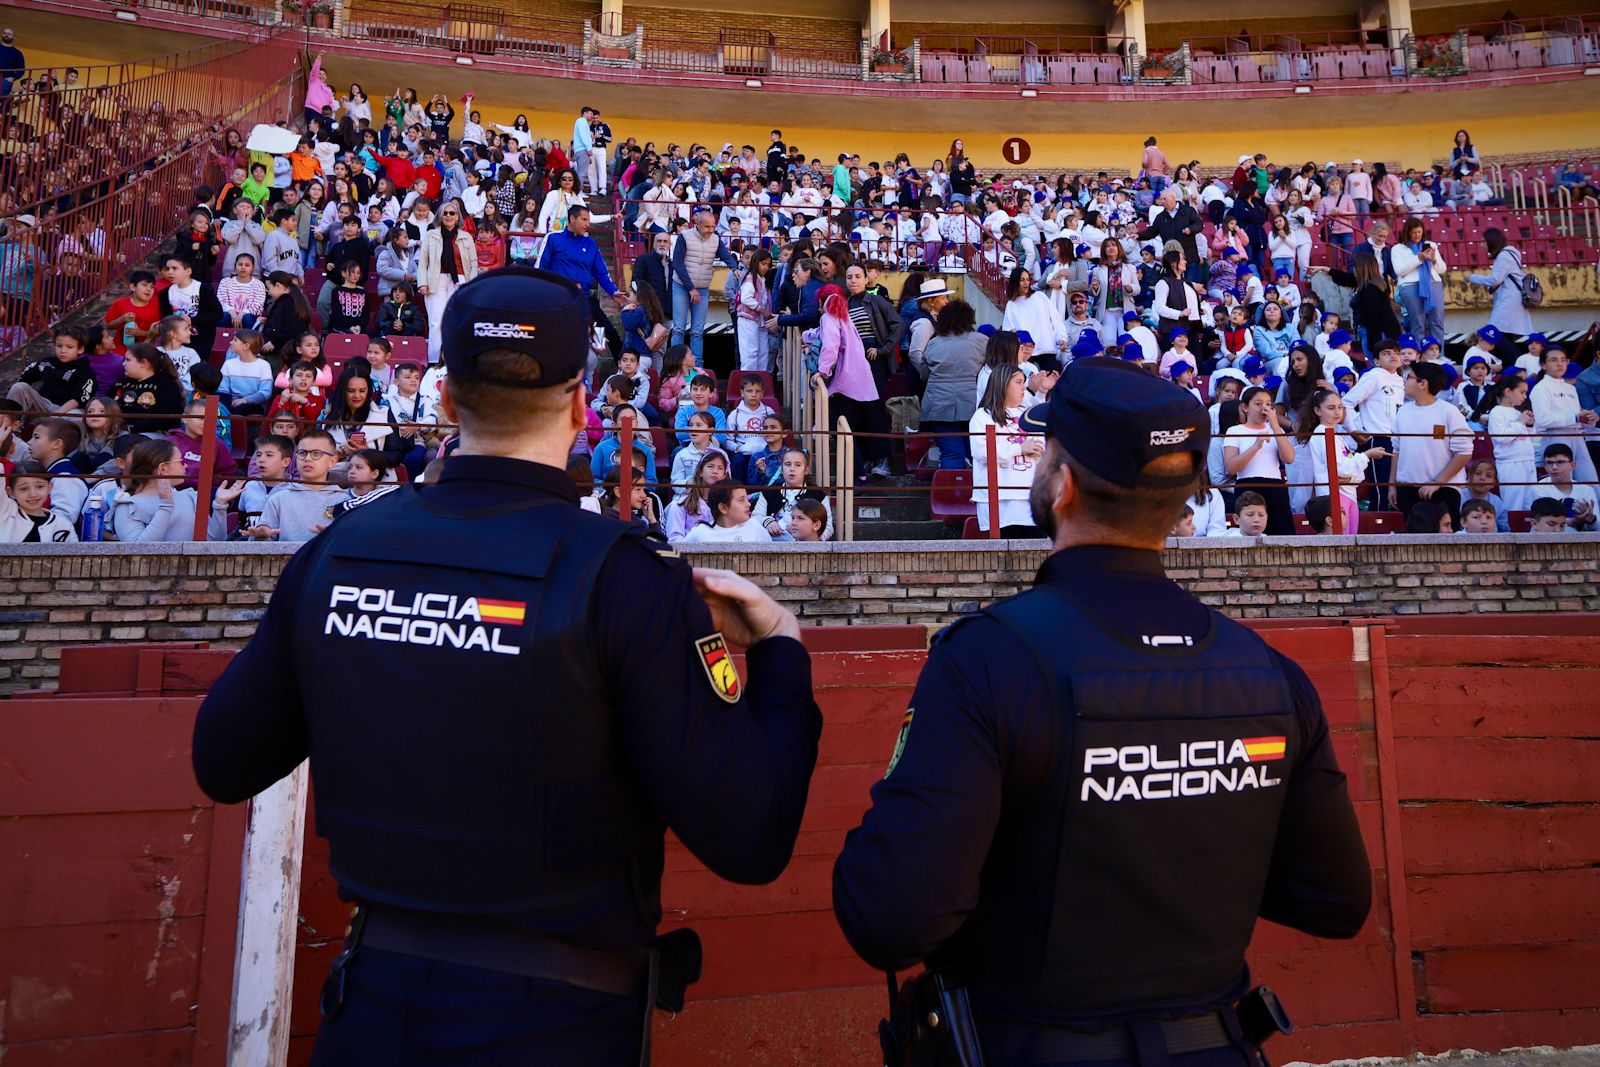 La Policía Nacional de Córdoba organiza una exhibición de medios policiales para las nuevas generaciones